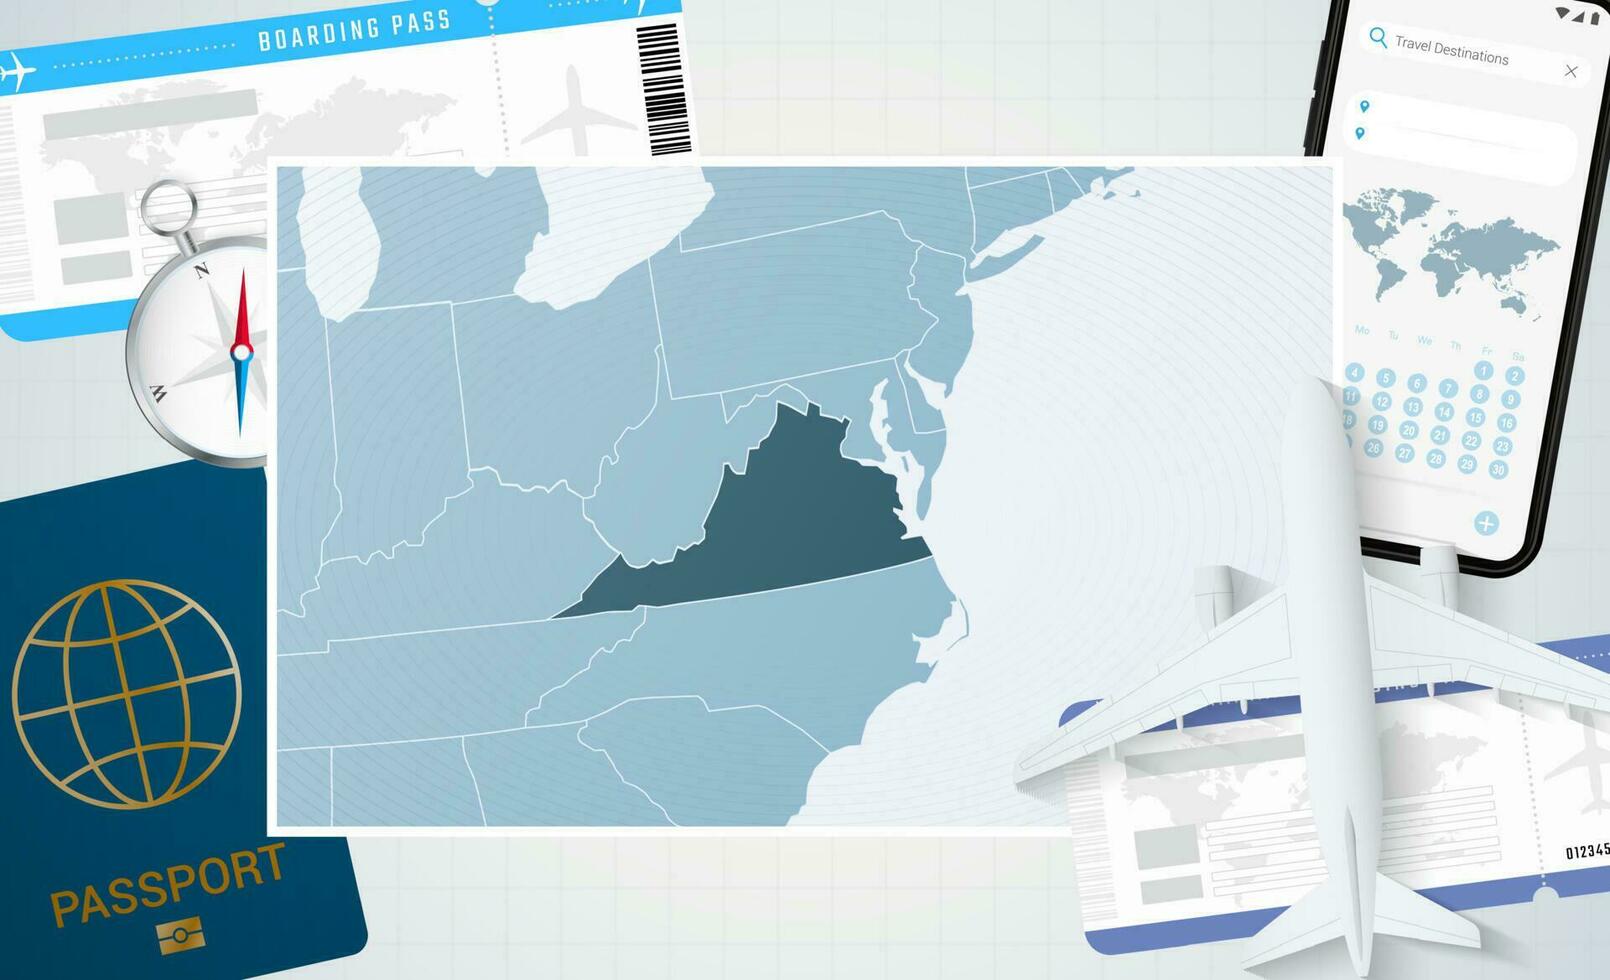 reis naar Virginia, illustratie met een kaart van Virginia. achtergrond met vliegtuig, cel telefoon, paspoort, kompas en kaartjes. vector